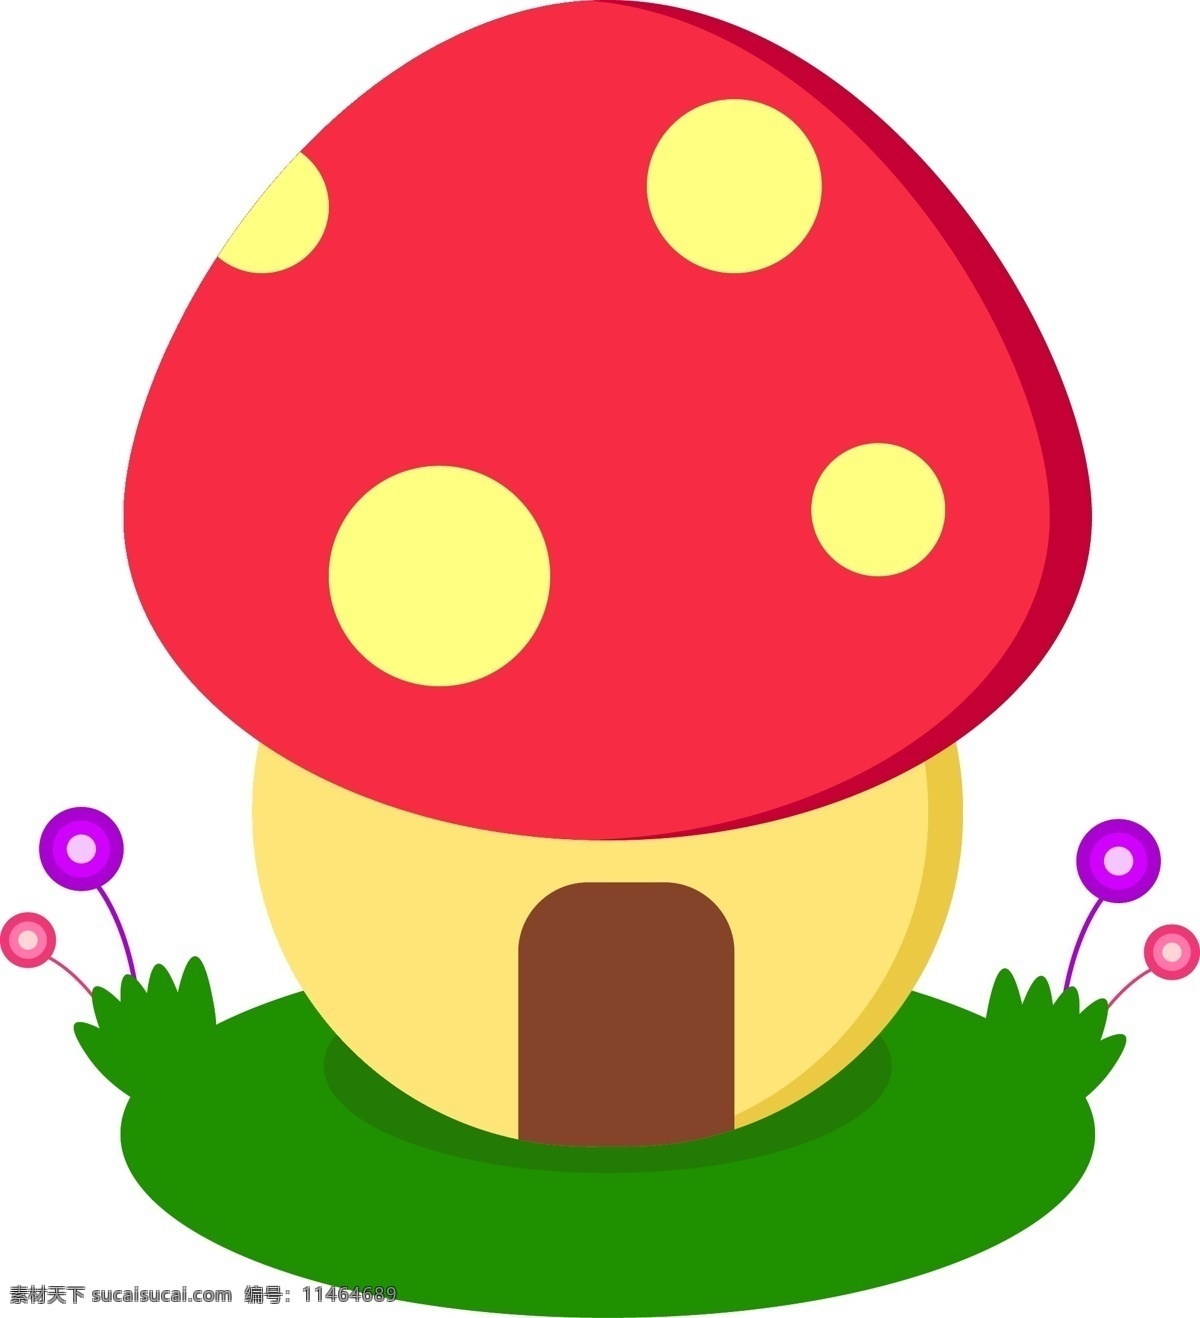 卡通 可爱 蘑菇 房子 矢量 原创 蘑菇素材 卡通蘑菇 草地 插图矢量 蘑菇房